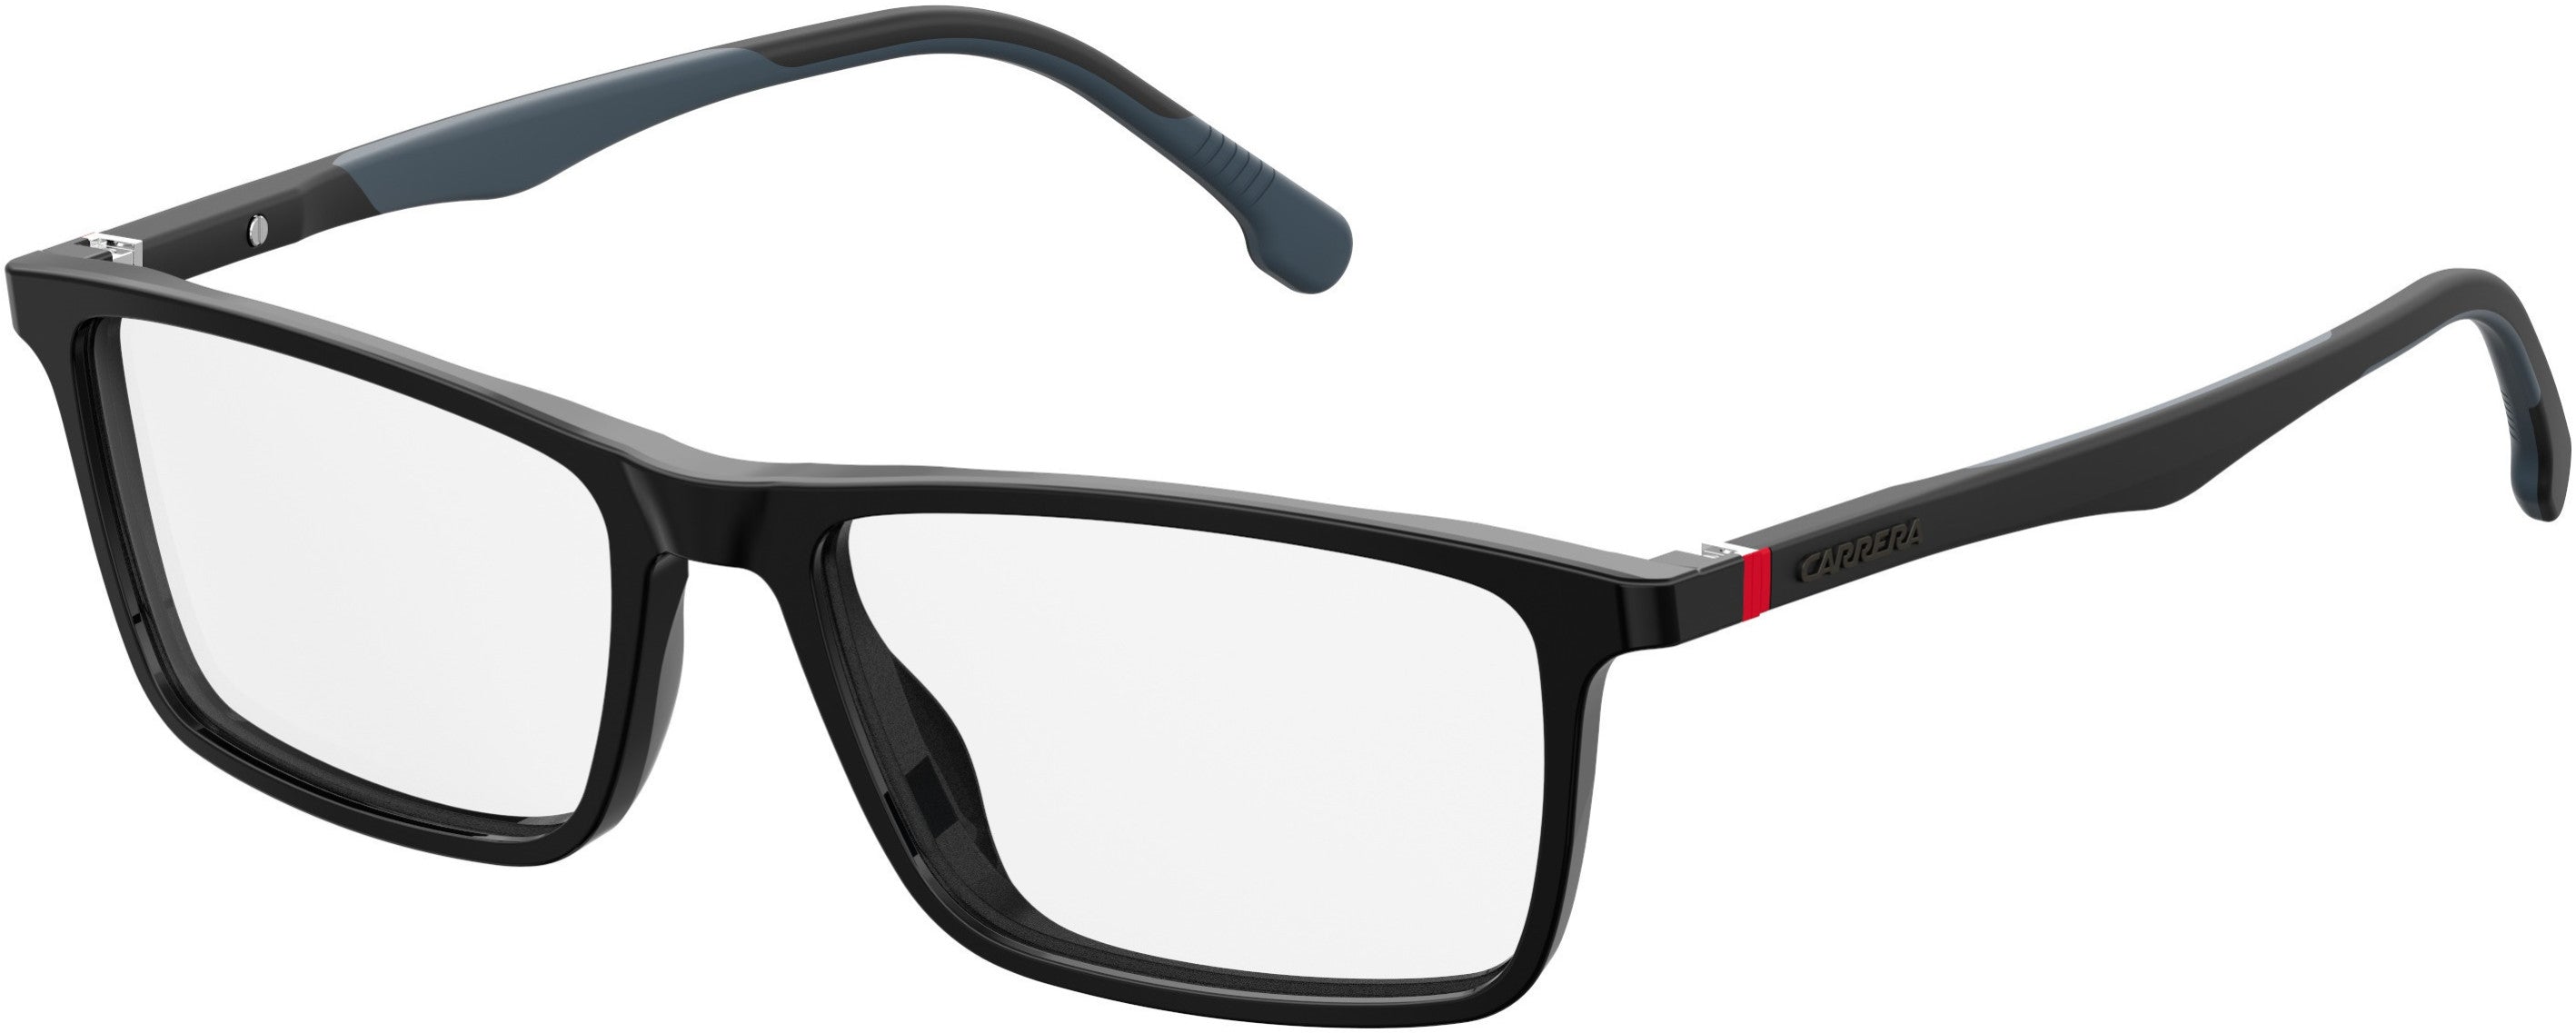  Carrera 8828/V Rectangular Eyeglasses 0807-0807  Black (00 Demo Lens)